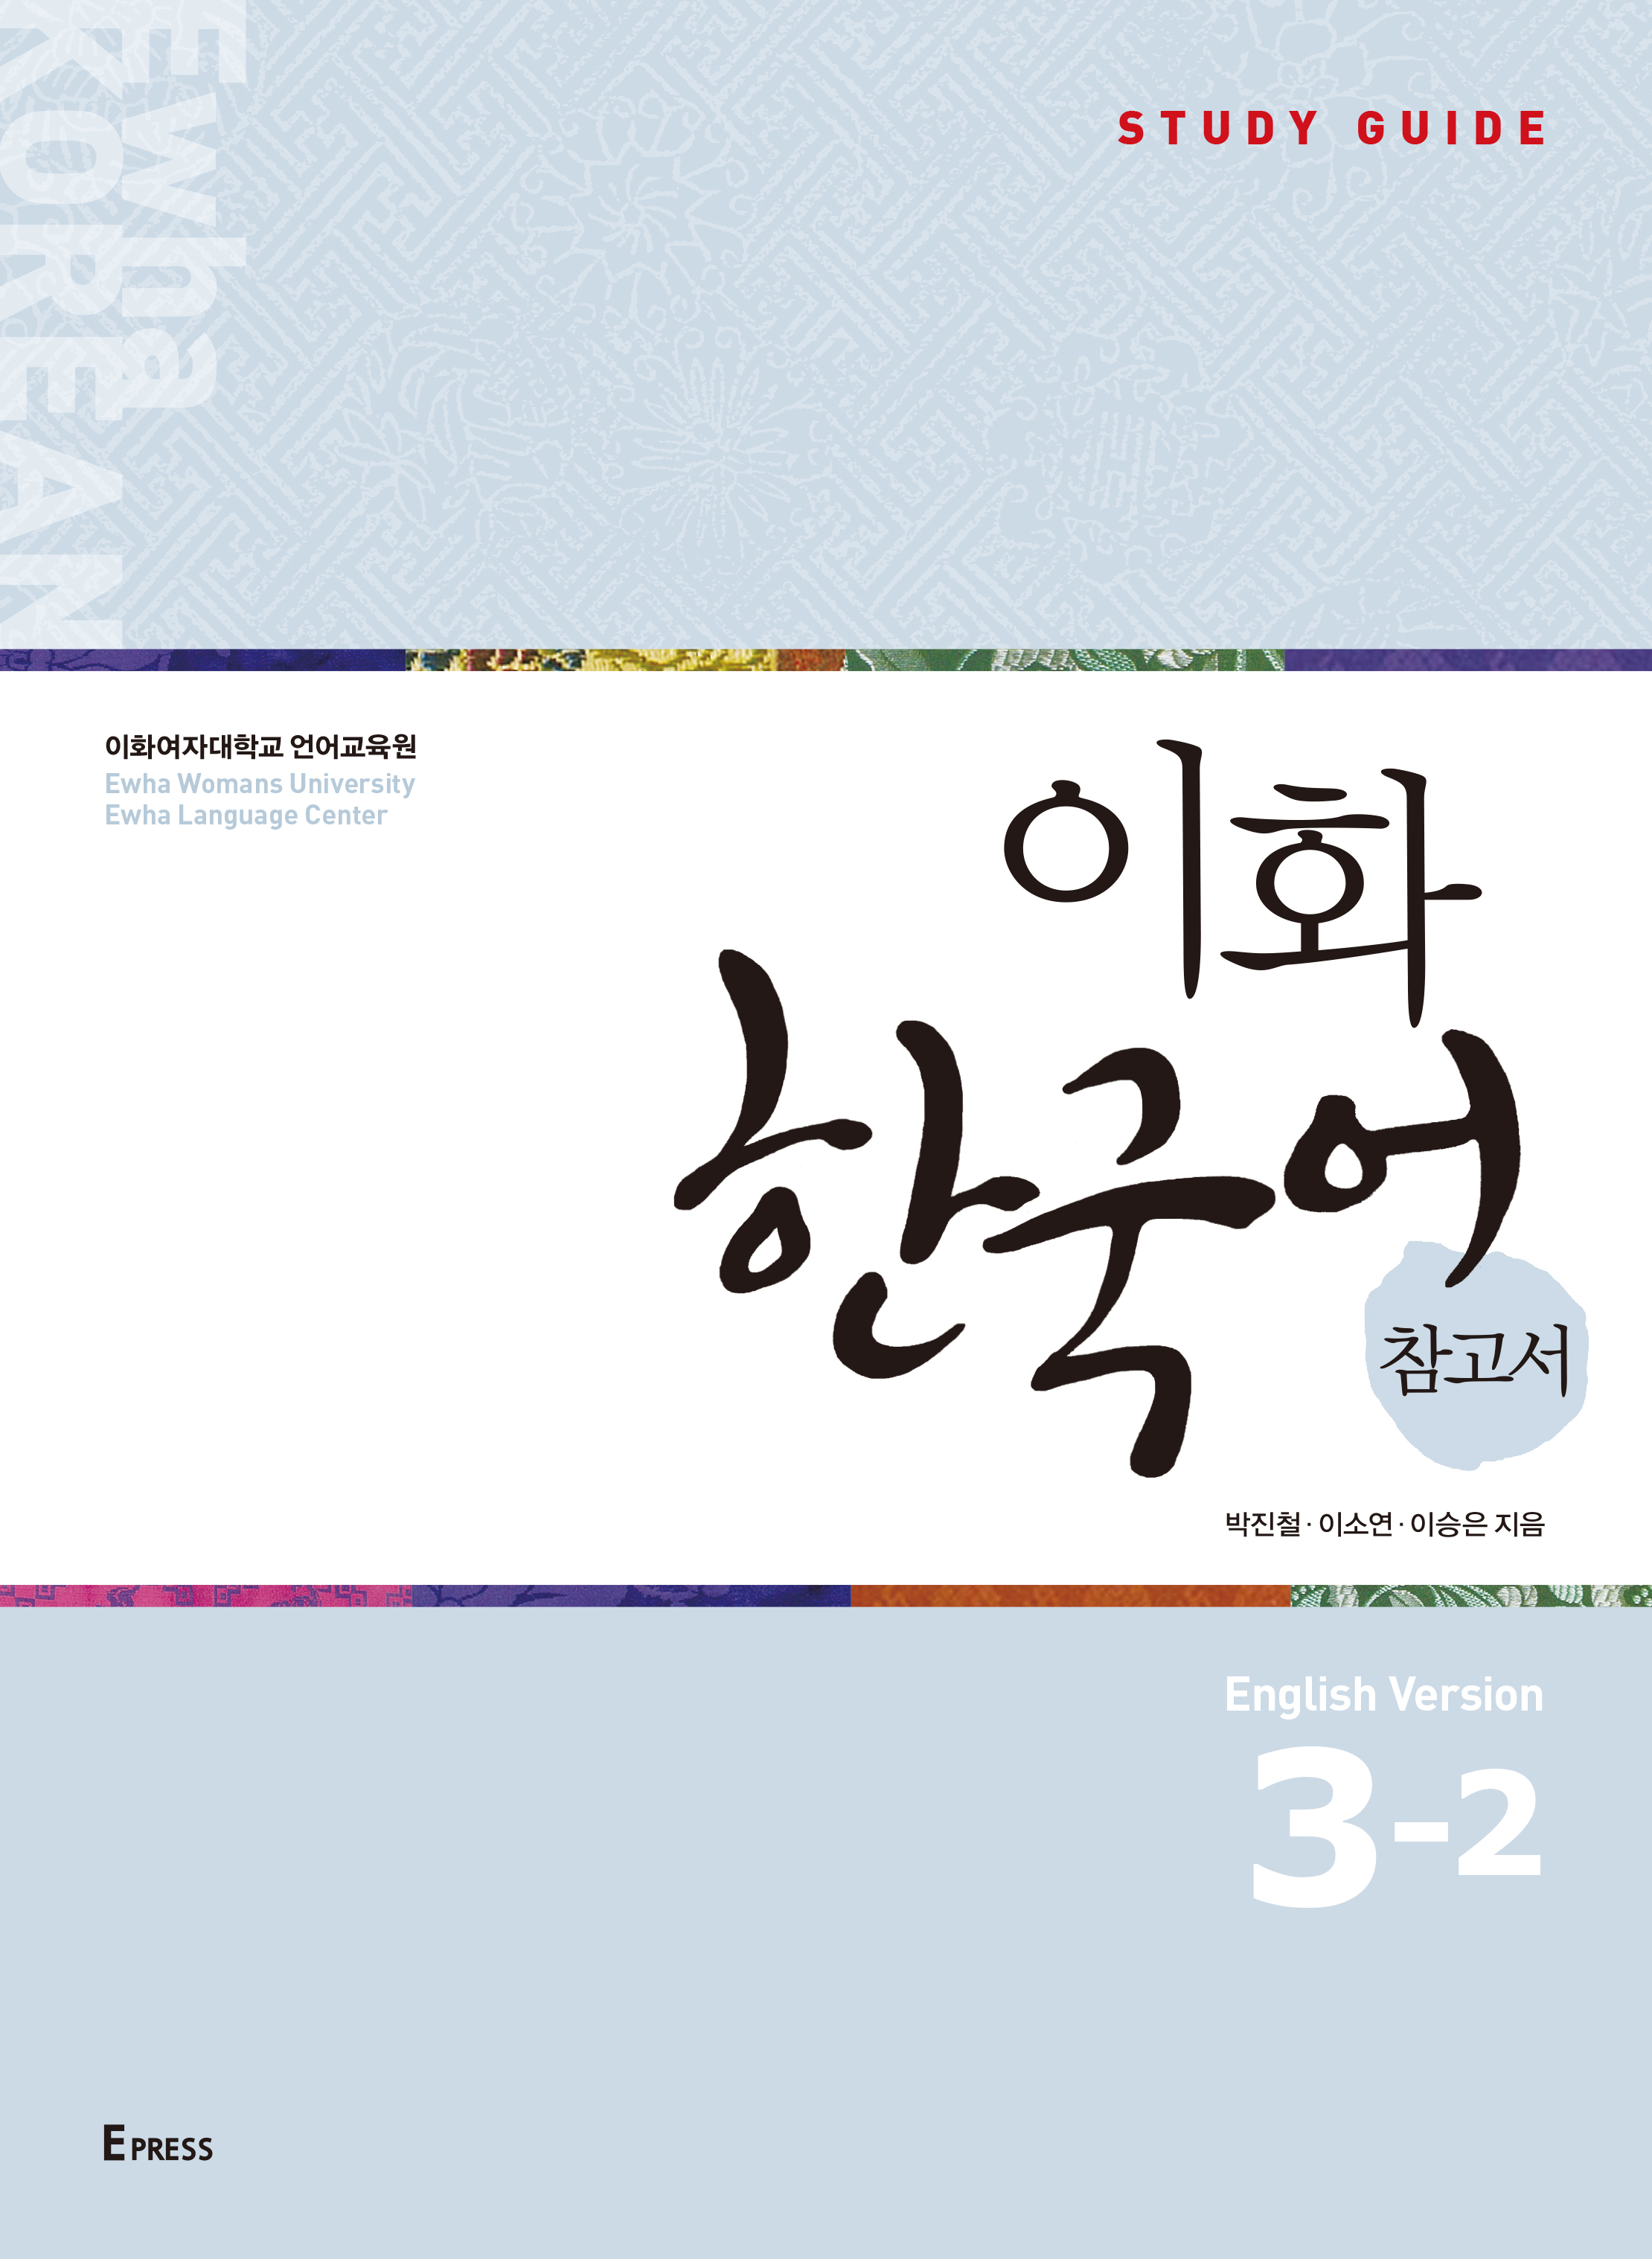 [EBOOK] Ewha Korean Study Guide 3-2 (English)  도서이미지